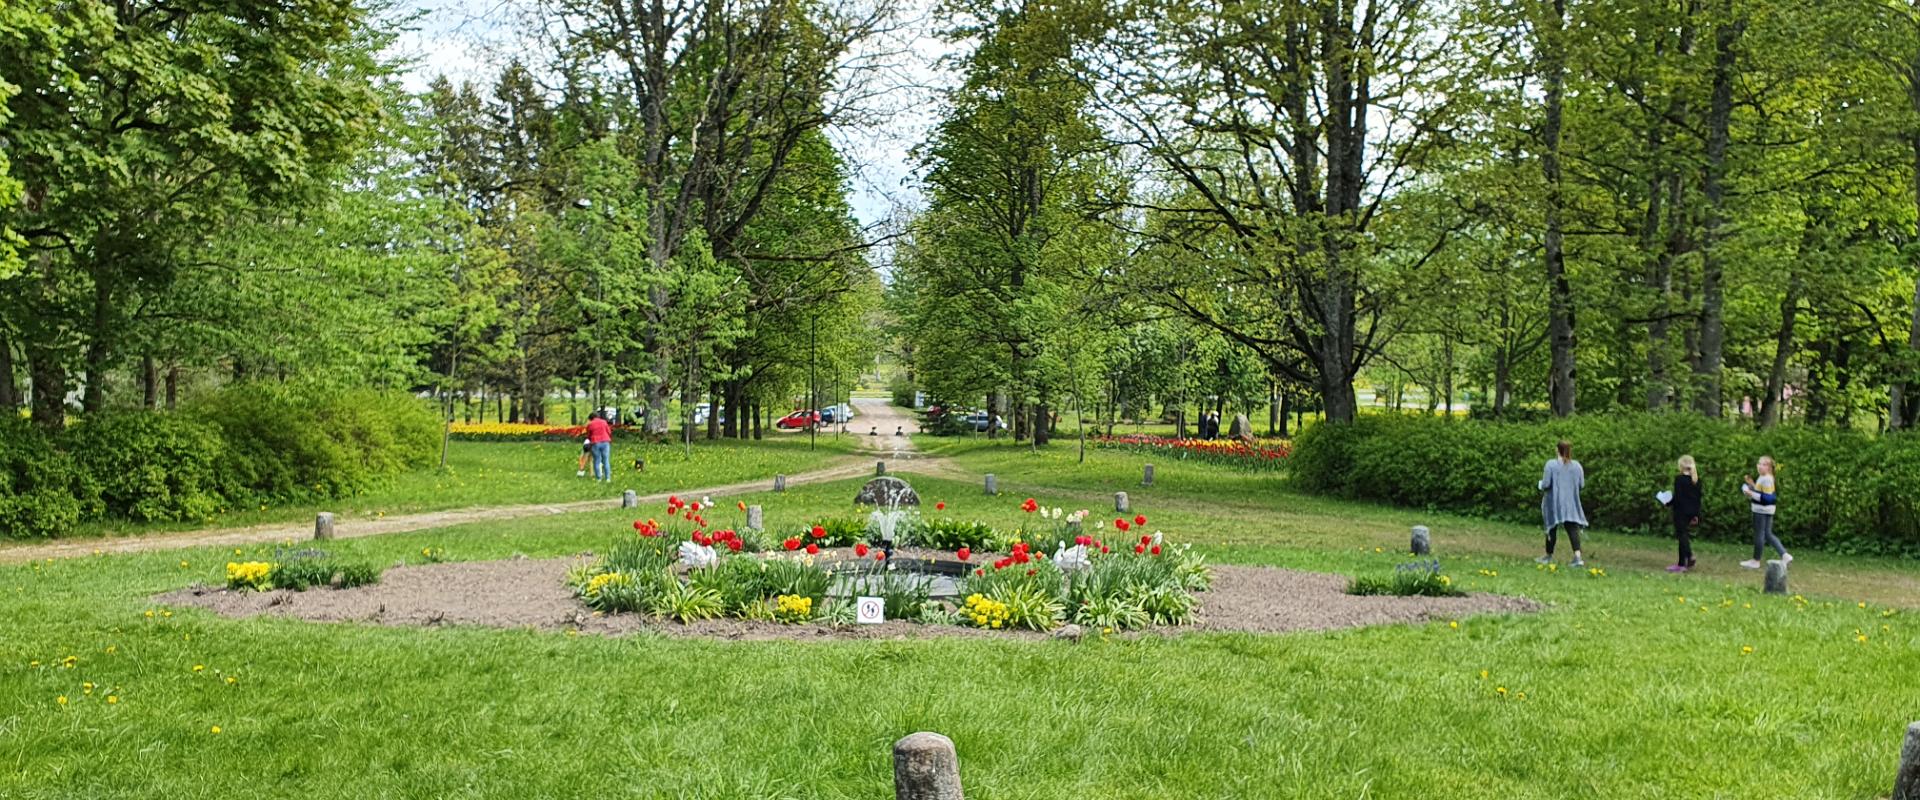 Tulpenfeld im Park des Gutshofs Kirna